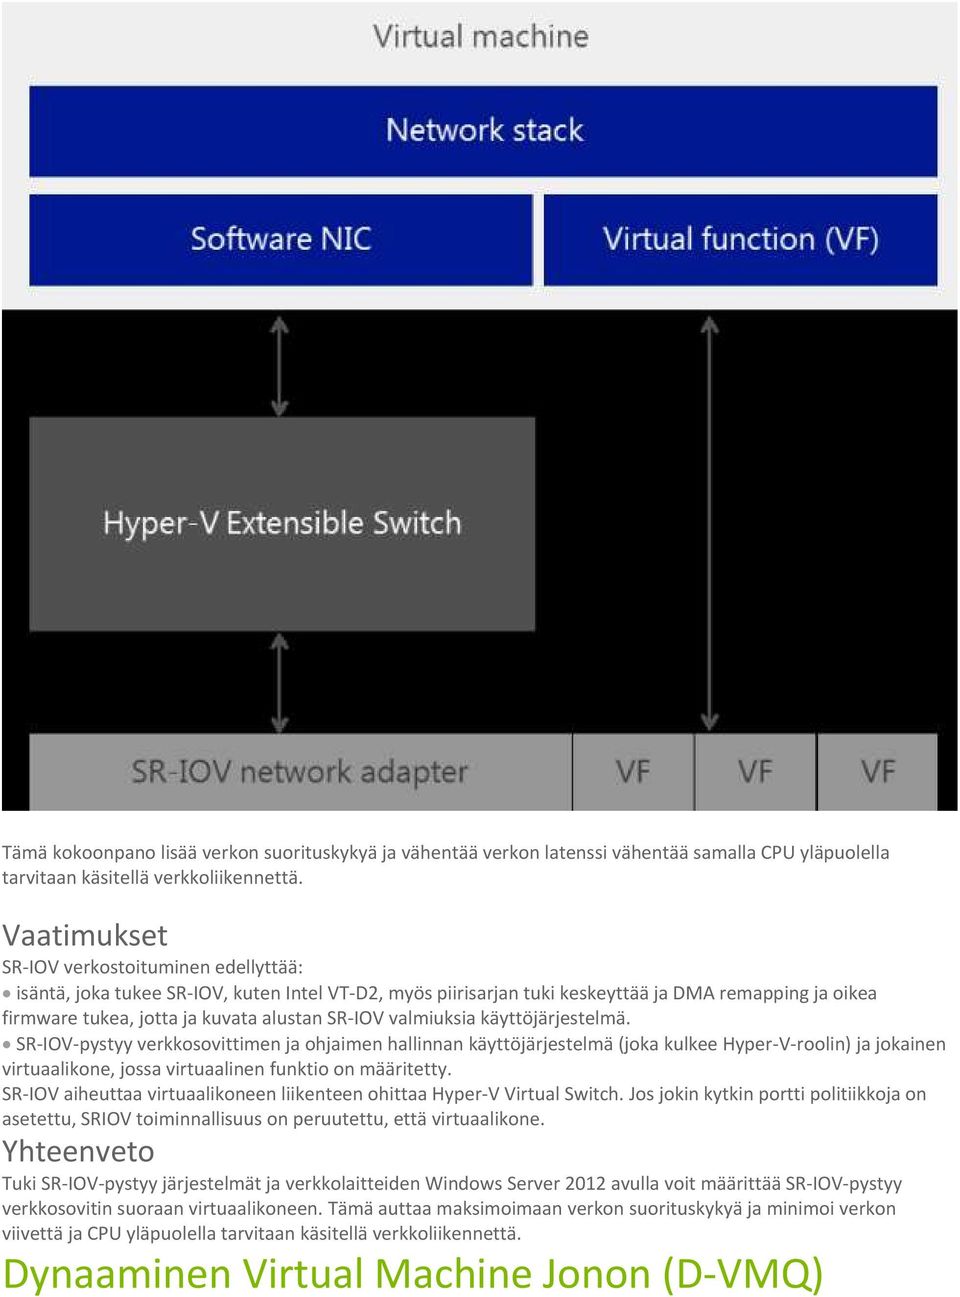 valmiuksia käyttöjärjestelmä. SR-IOV-pystyy verkkosovittimen ja ohjaimen hallinnan käyttöjärjestelmä (joka kulkee Hyper-V-roolin) ja jokainen virtuaalikone, jossa virtuaalinen funktio on määritetty.